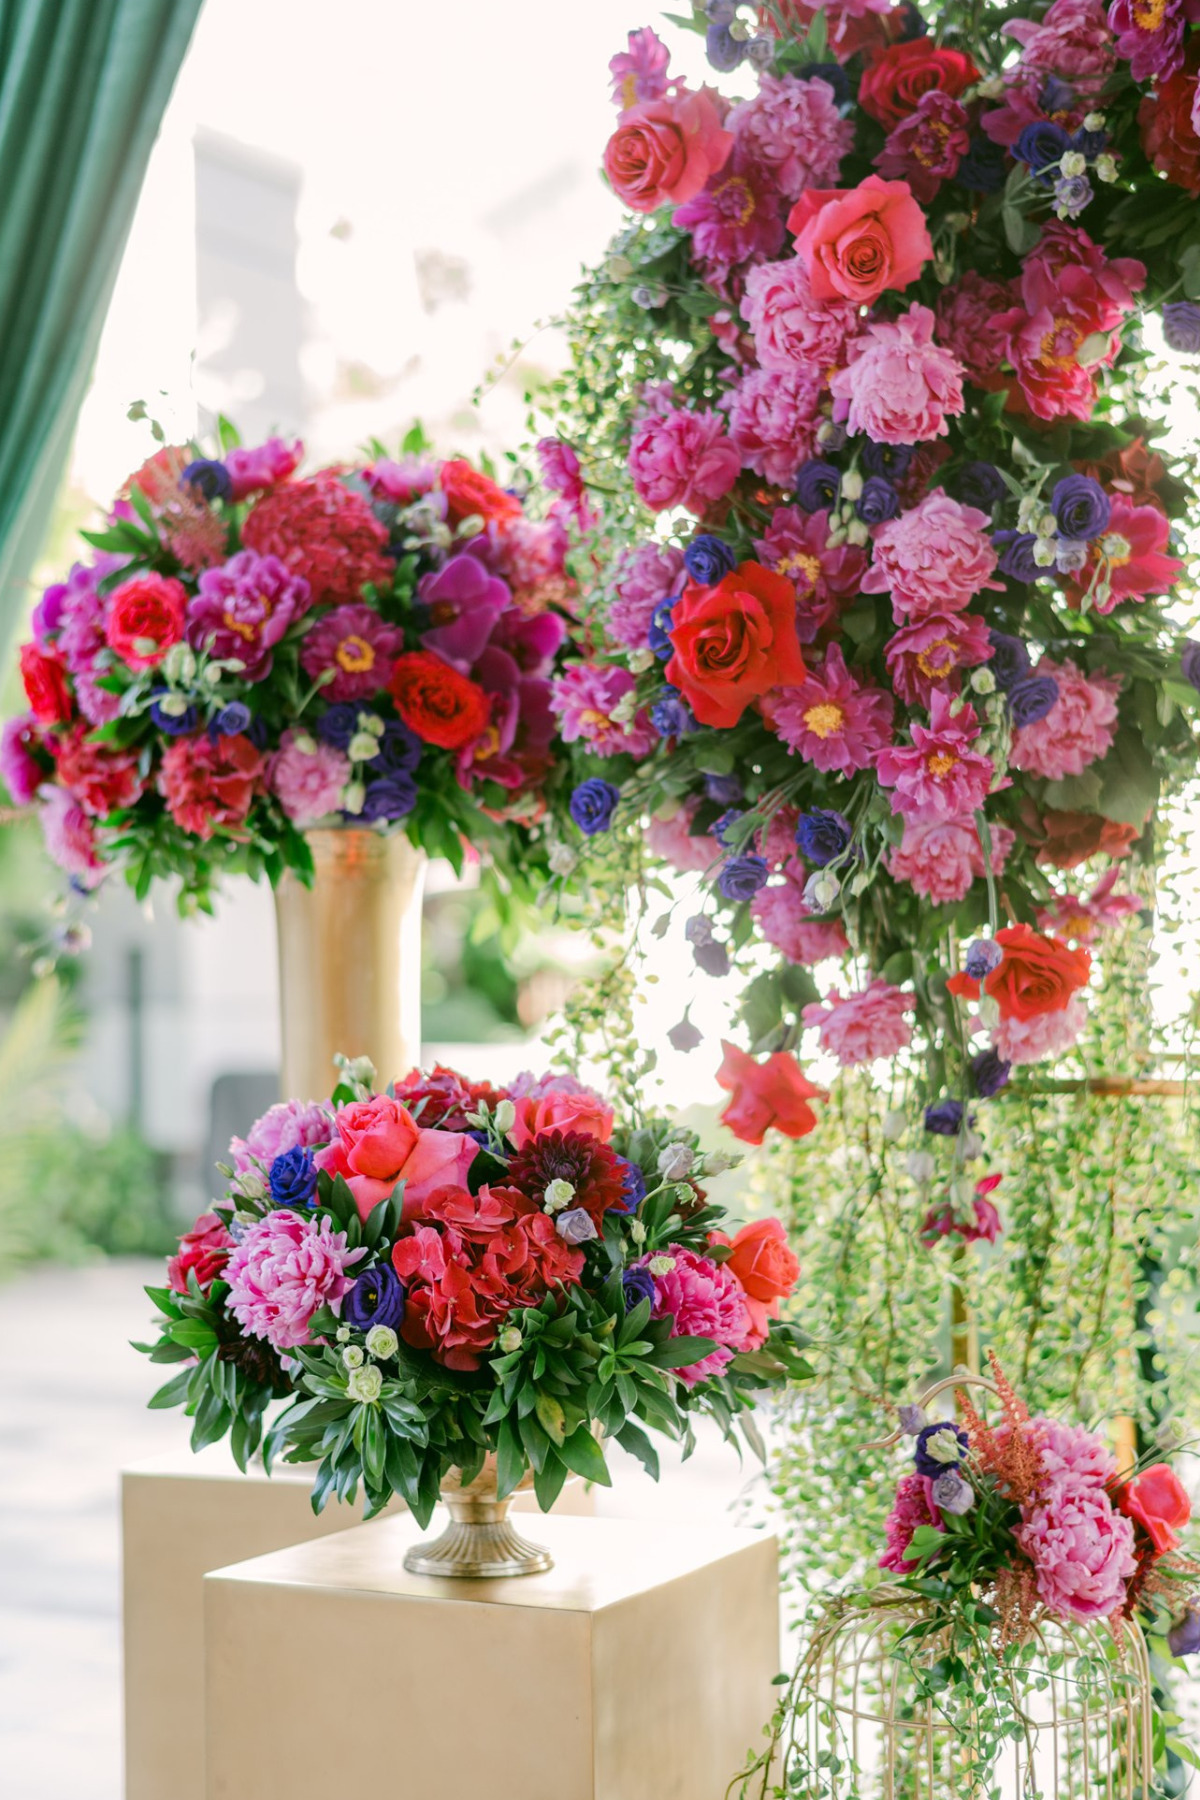 secret-garden-wedding-red-purple-pink-flowers-greenery-centerpieces-gold-vase-stand